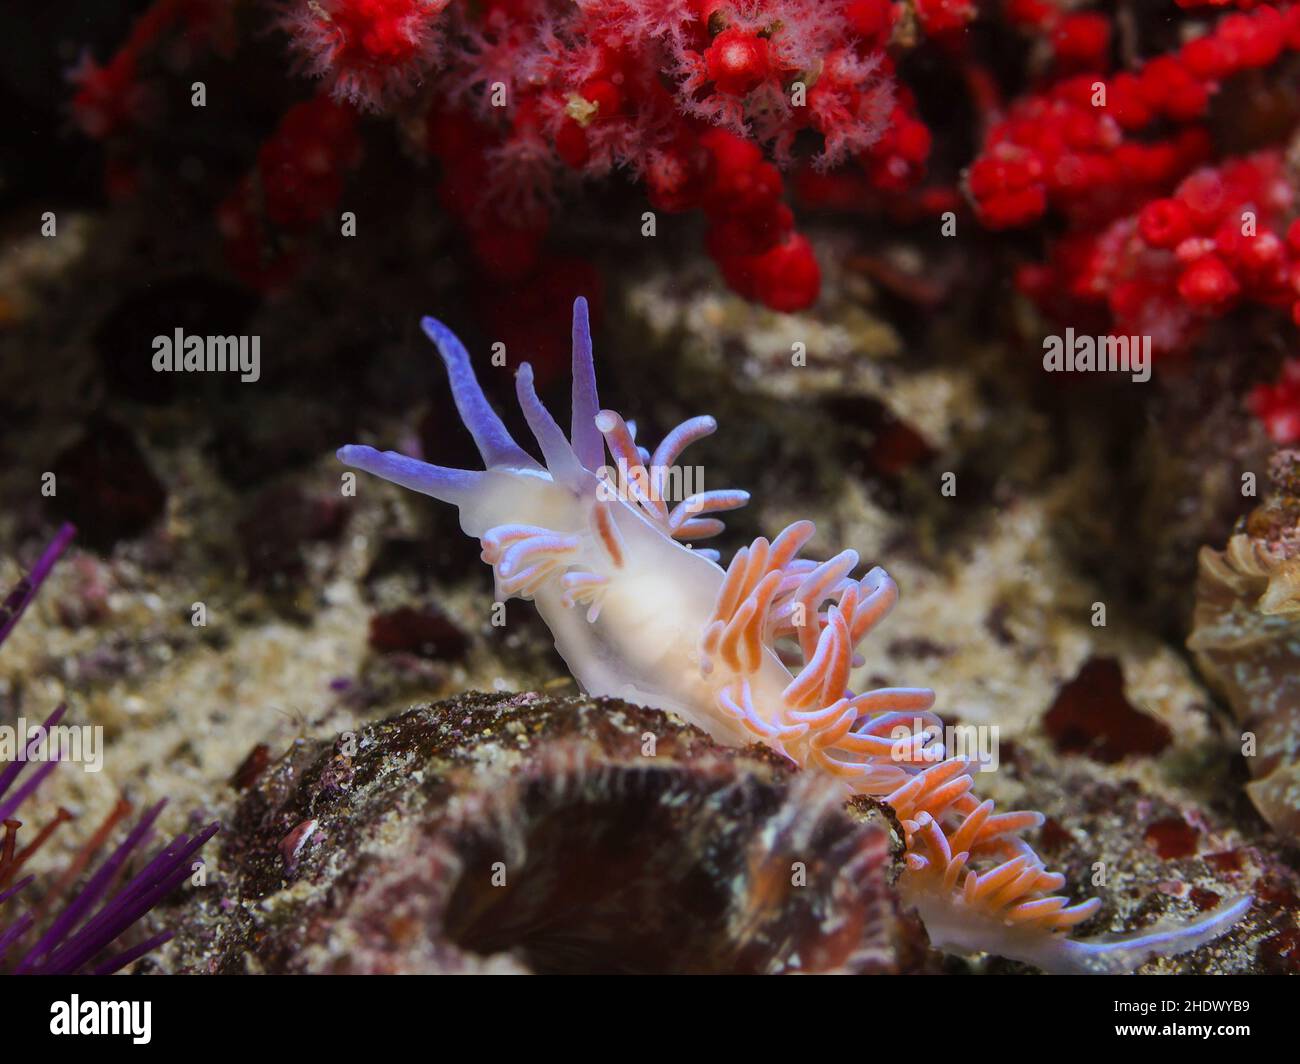 Coral nudibranch subacuático (Phyllodesmium horridum) que se mueve en el arrecife alcanzando con su cabeza. Cuerpo anaranjado, cerata curvo con coloración naranja. Foto de stock